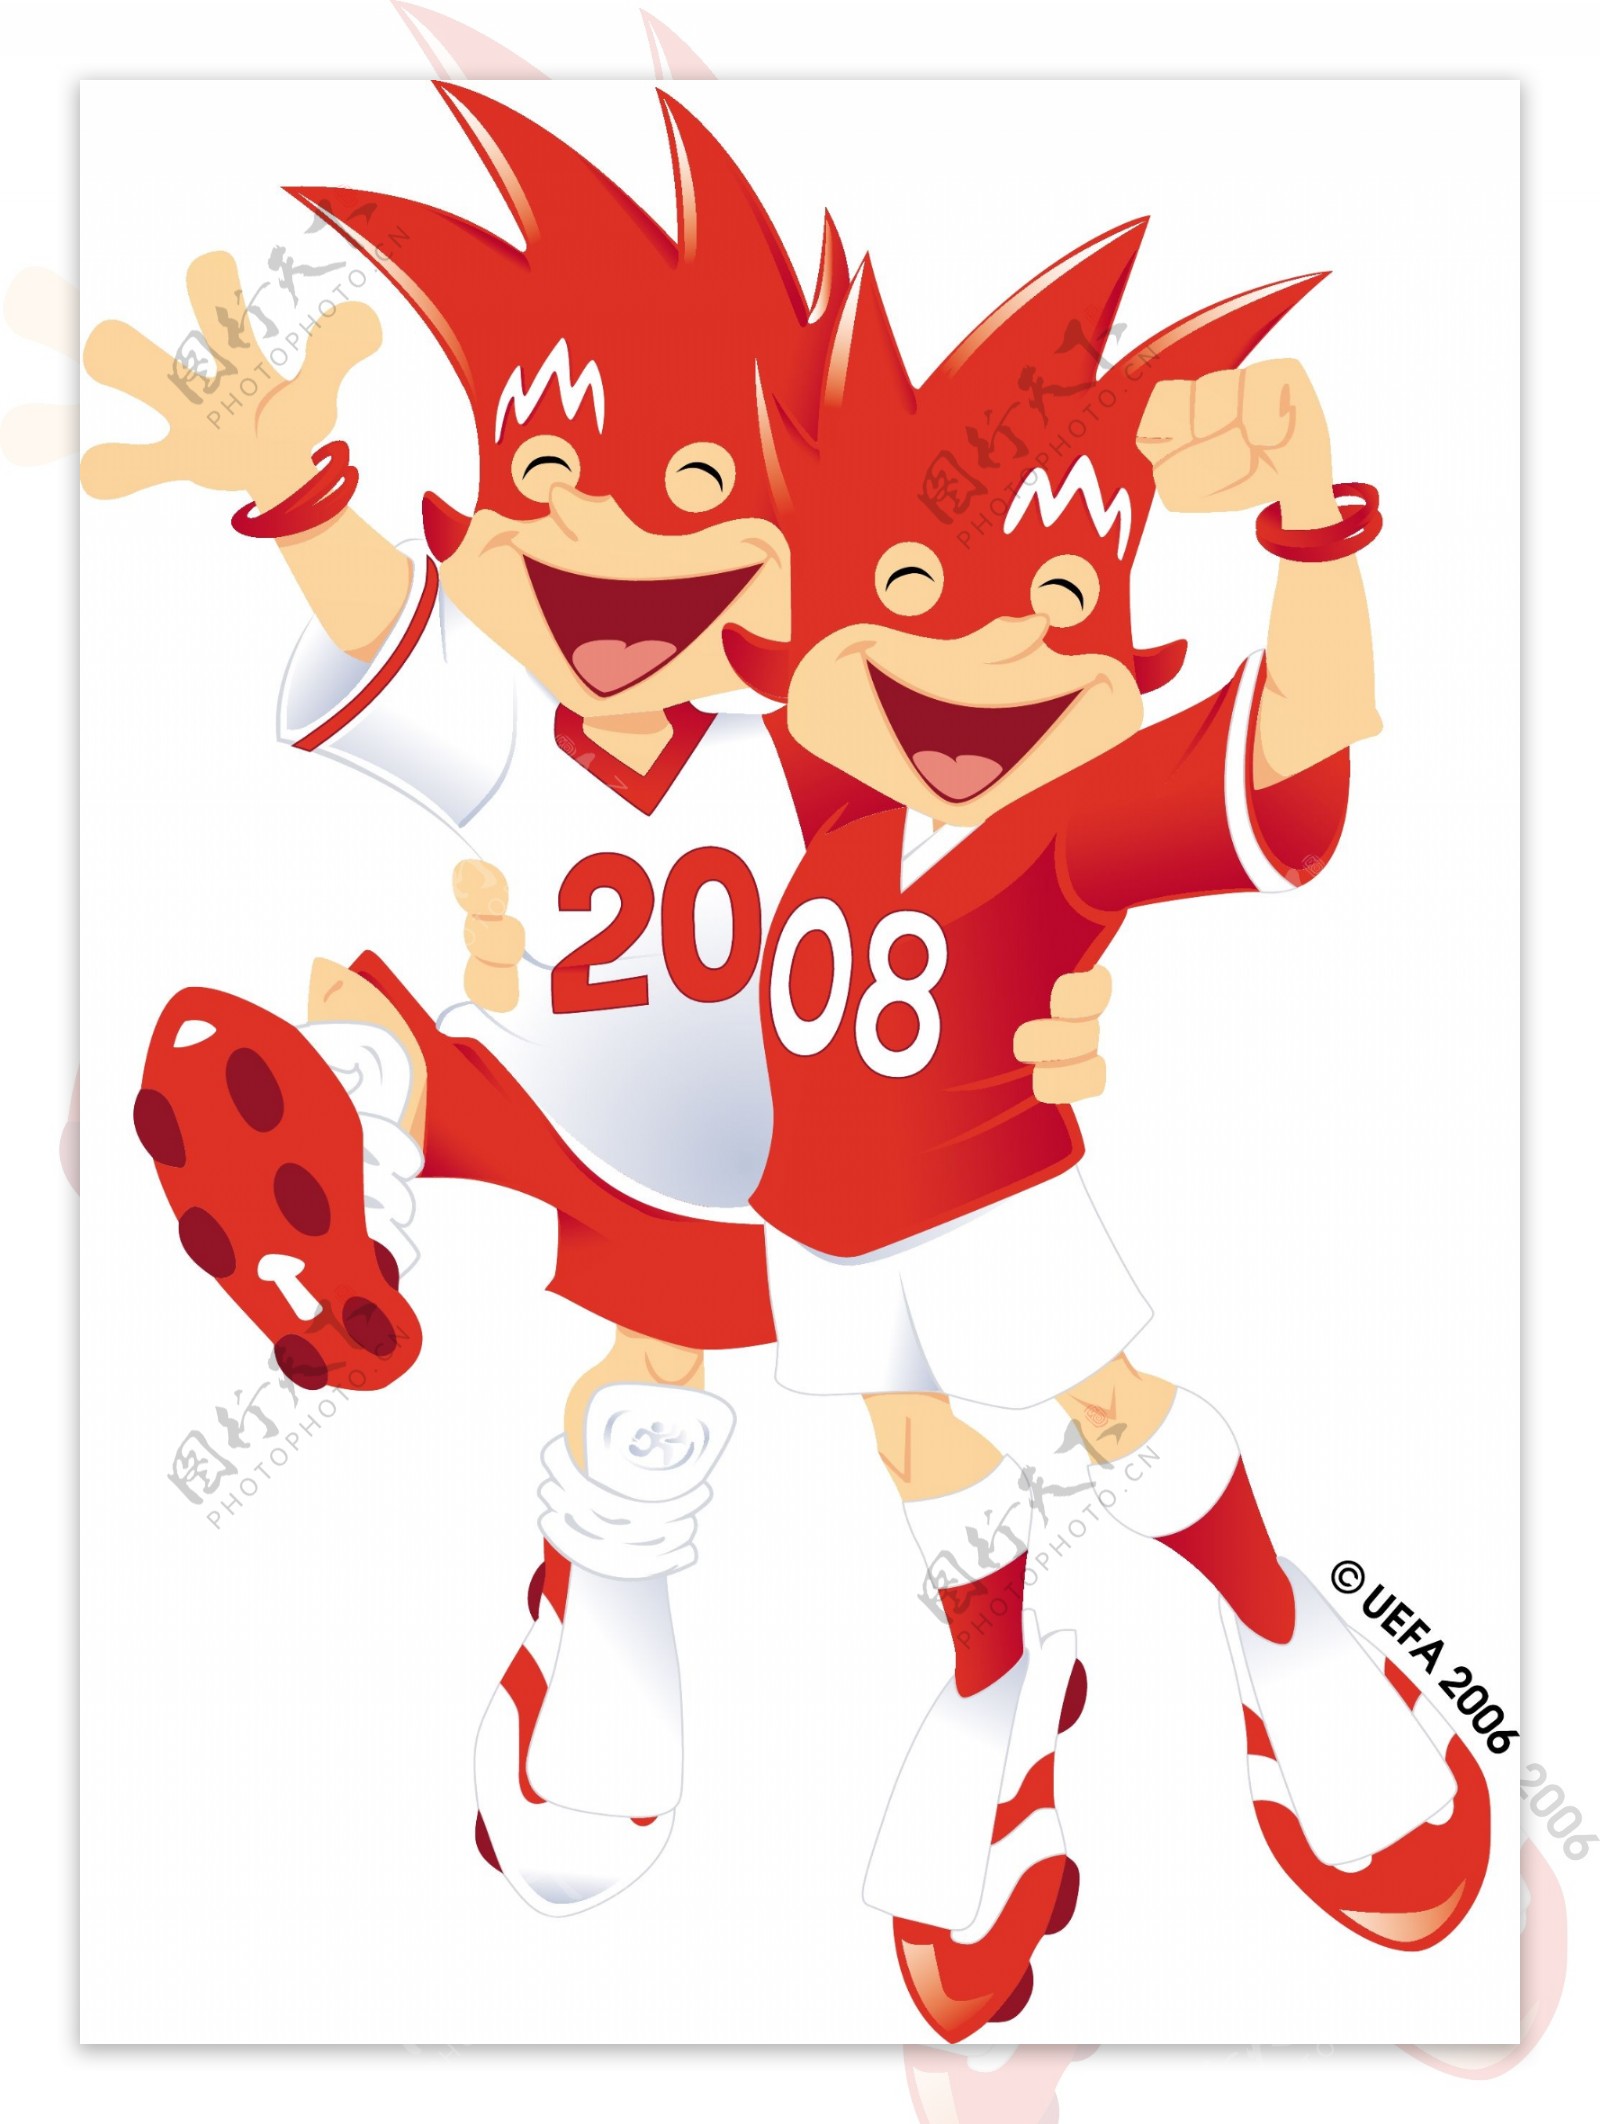 2008欧洲杯的吉祥物矢量素材